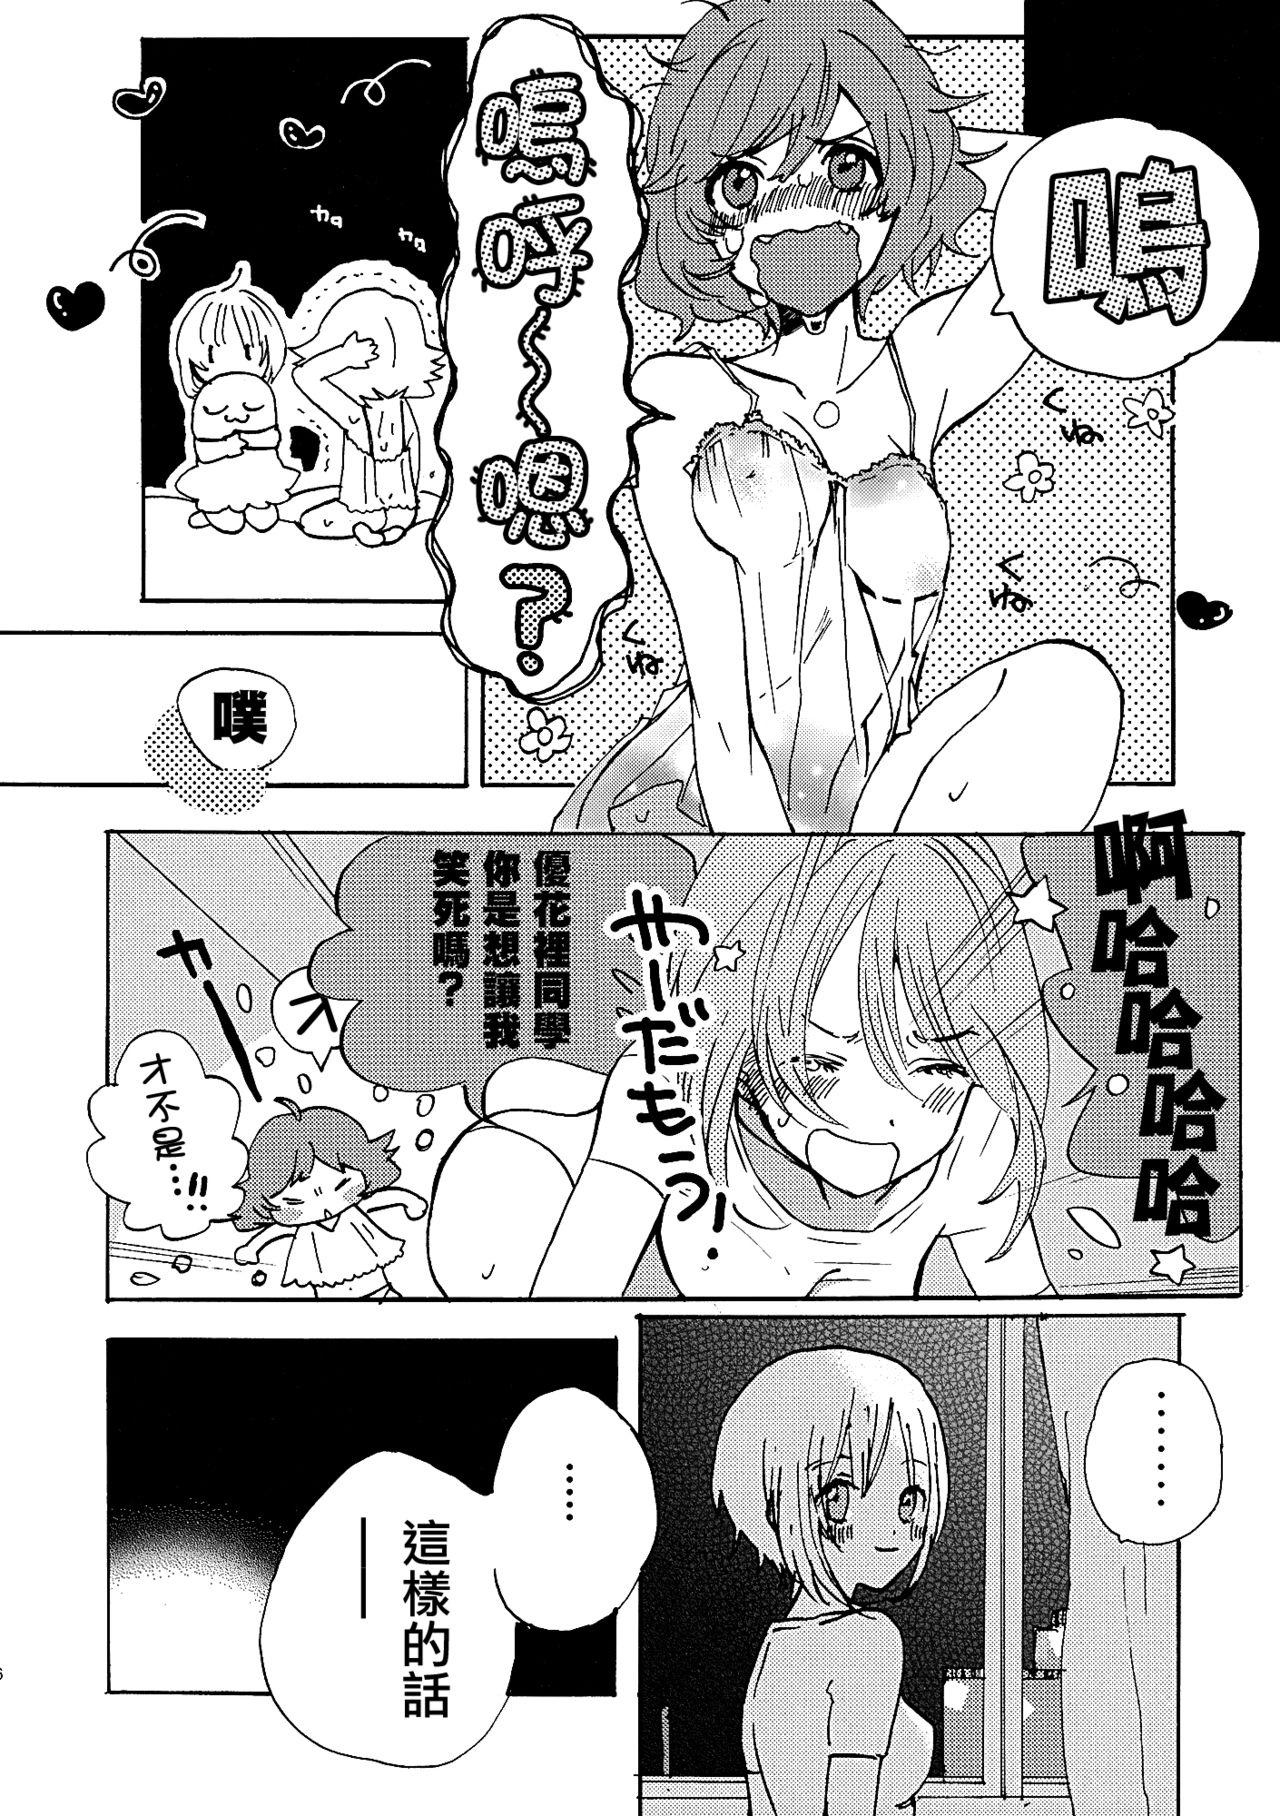 Grande Natsu wa Aka-chan Play to Chimou to, Hanabi o Mite Kiss o Suru no da. - Girls und panzer Chichona - Page 5